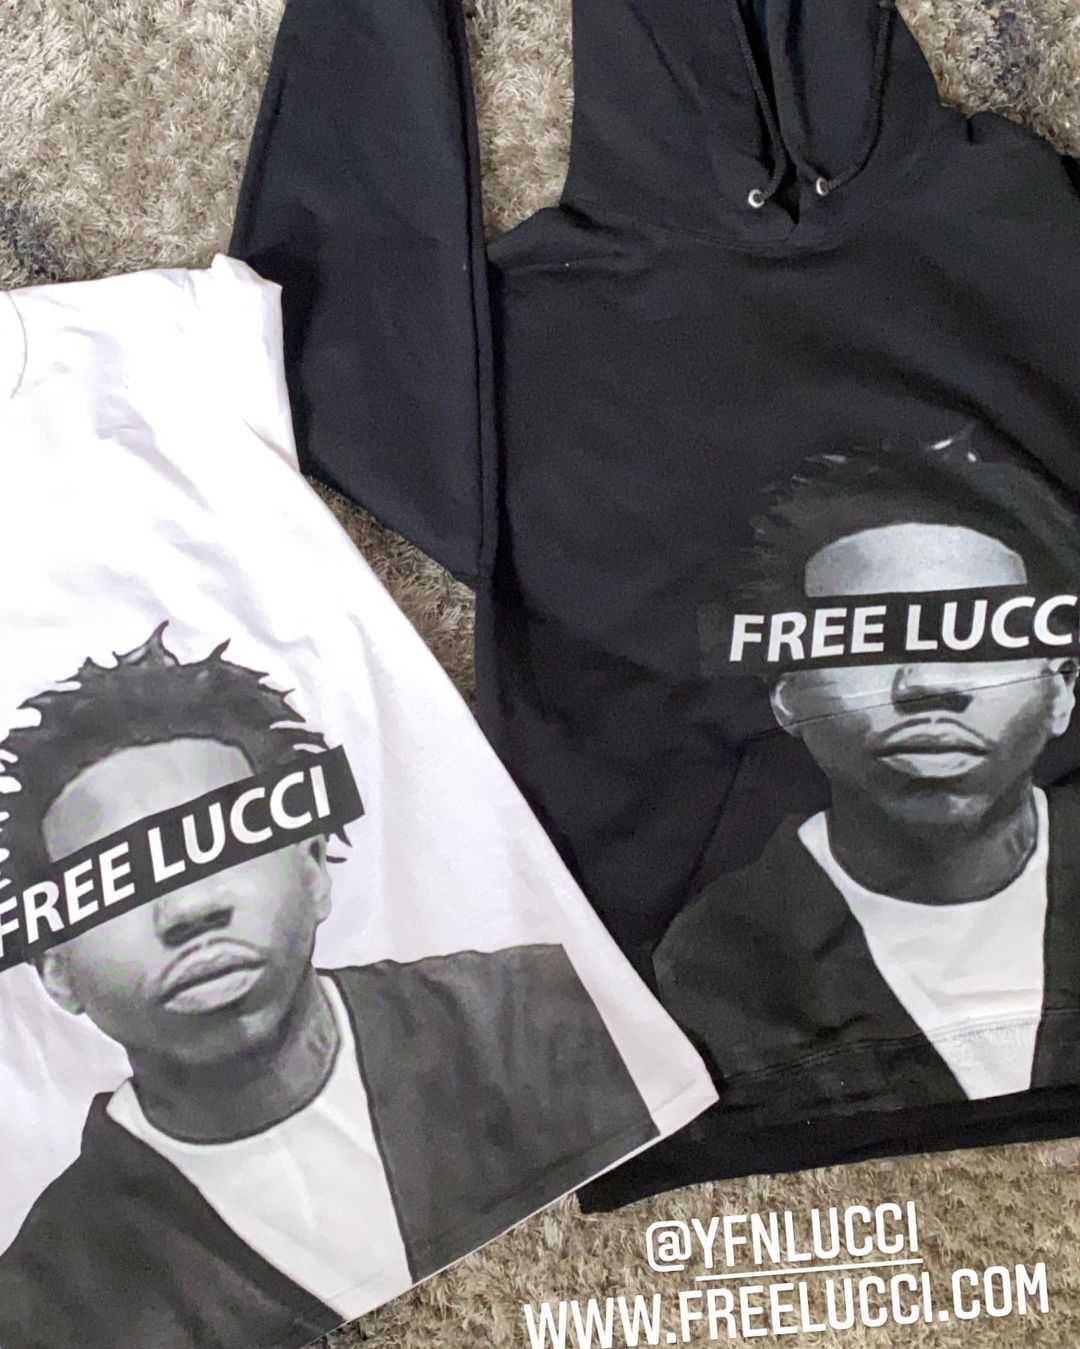 YFN Lucci Sells “Free Lucci” Merch Amid Incarceration